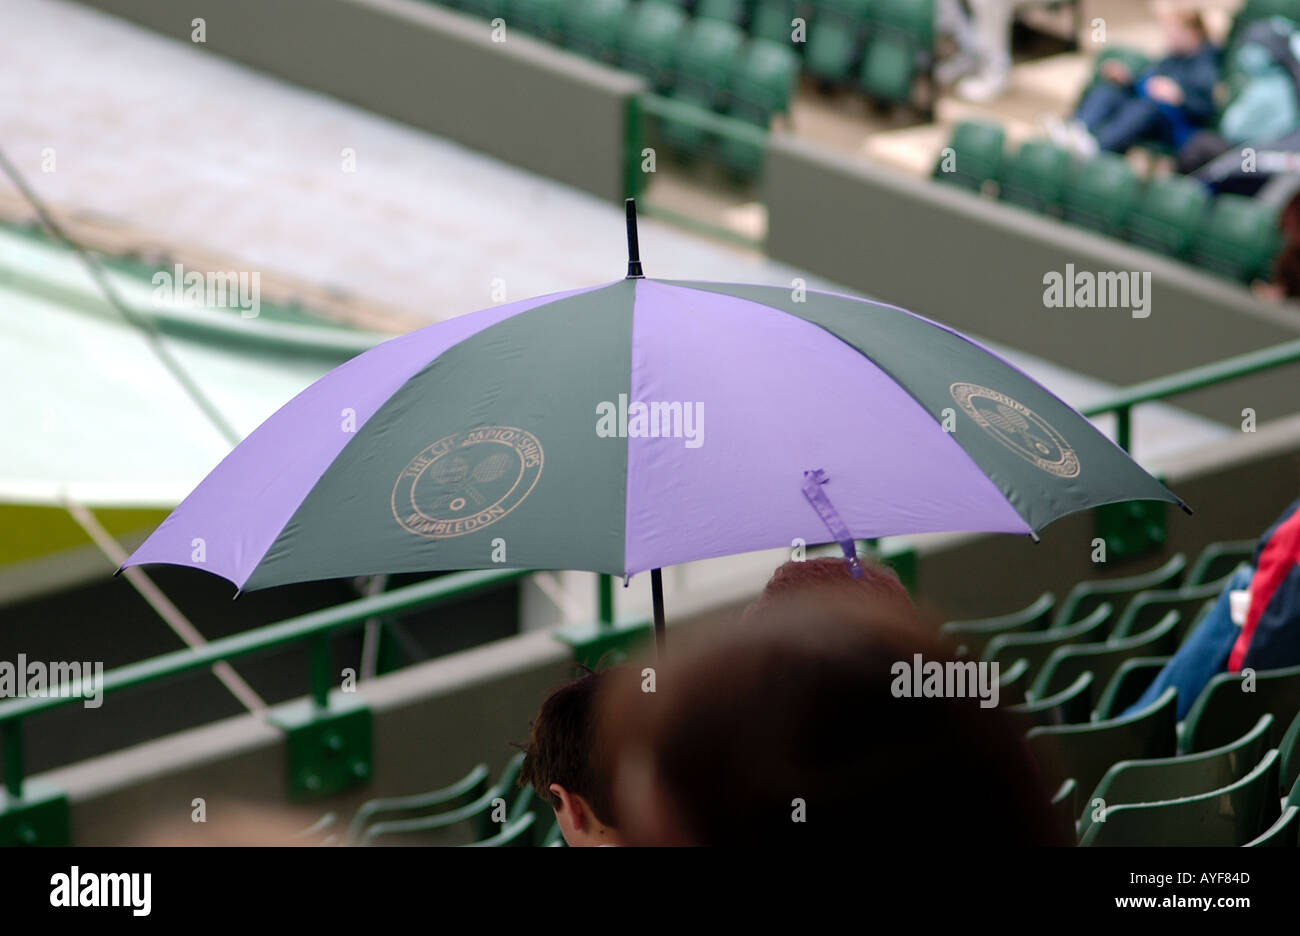 Parapluie à Wimbledon tennis Angleterre à cause de la pluie Banque D'Images